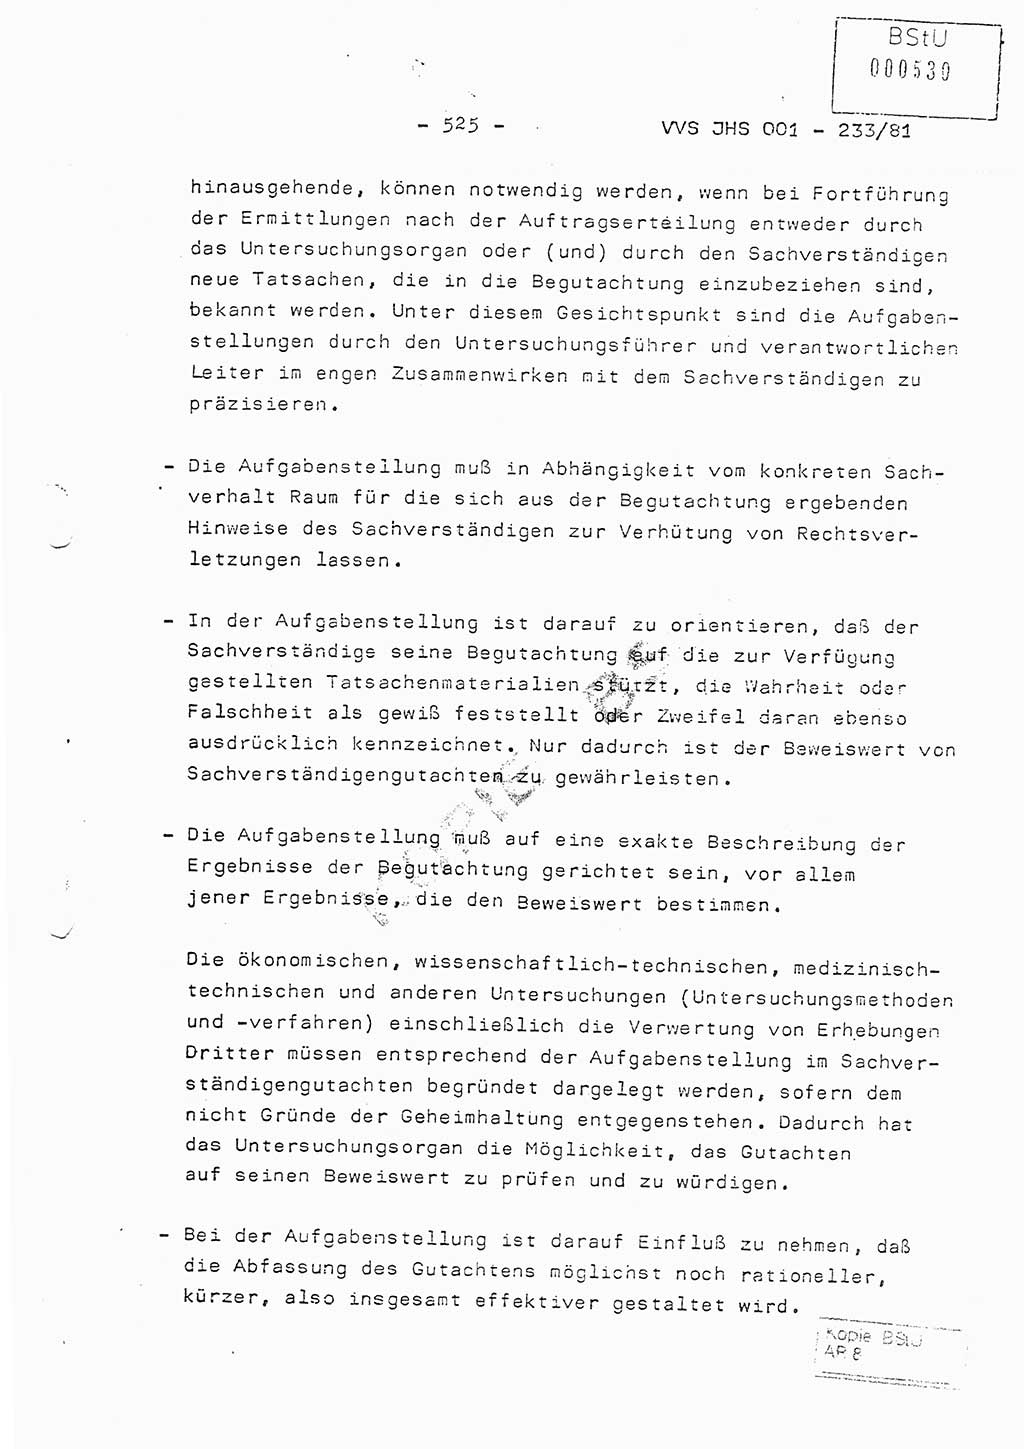 Dissertation Oberstleutnant Horst Zank (JHS), Oberstleutnant Dr. Karl-Heinz Knoblauch (JHS), Oberstleutnant Gustav-Adolf Kowalewski (HA Ⅸ), Oberstleutnant Wolfgang Plötner (HA Ⅸ), Ministerium für Staatssicherheit (MfS) [Deutsche Demokratische Republik (DDR)], Juristische Hochschule (JHS), Vertrauliche Verschlußsache (VVS) o001-233/81, Potsdam 1981, Blatt 525 (Diss. MfS DDR JHS VVS o001-233/81 1981, Bl. 525)